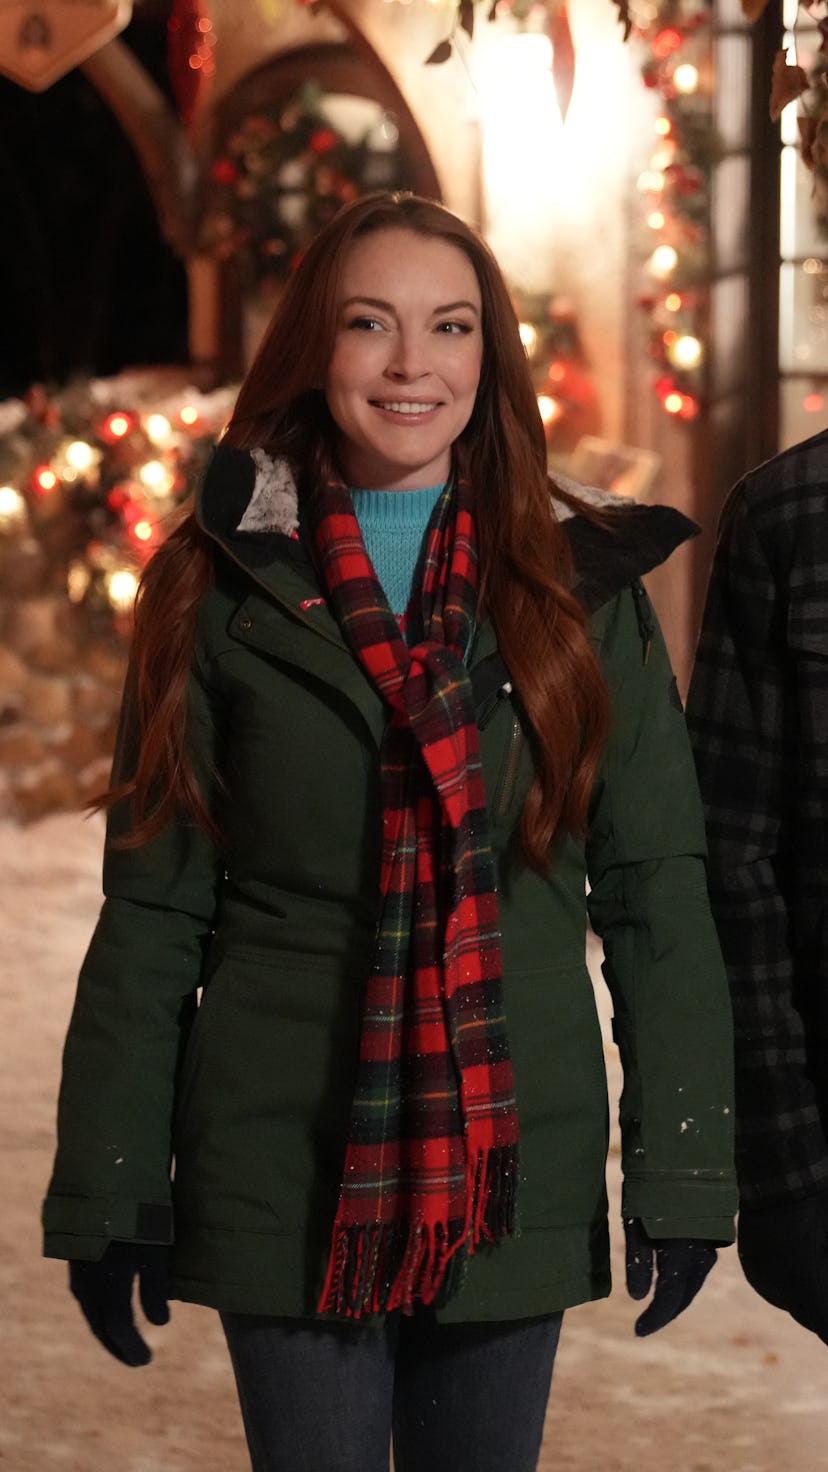 Lindsay Lohan as Sierra, Chord Overstreet as Jake in Christmas in Wonderland